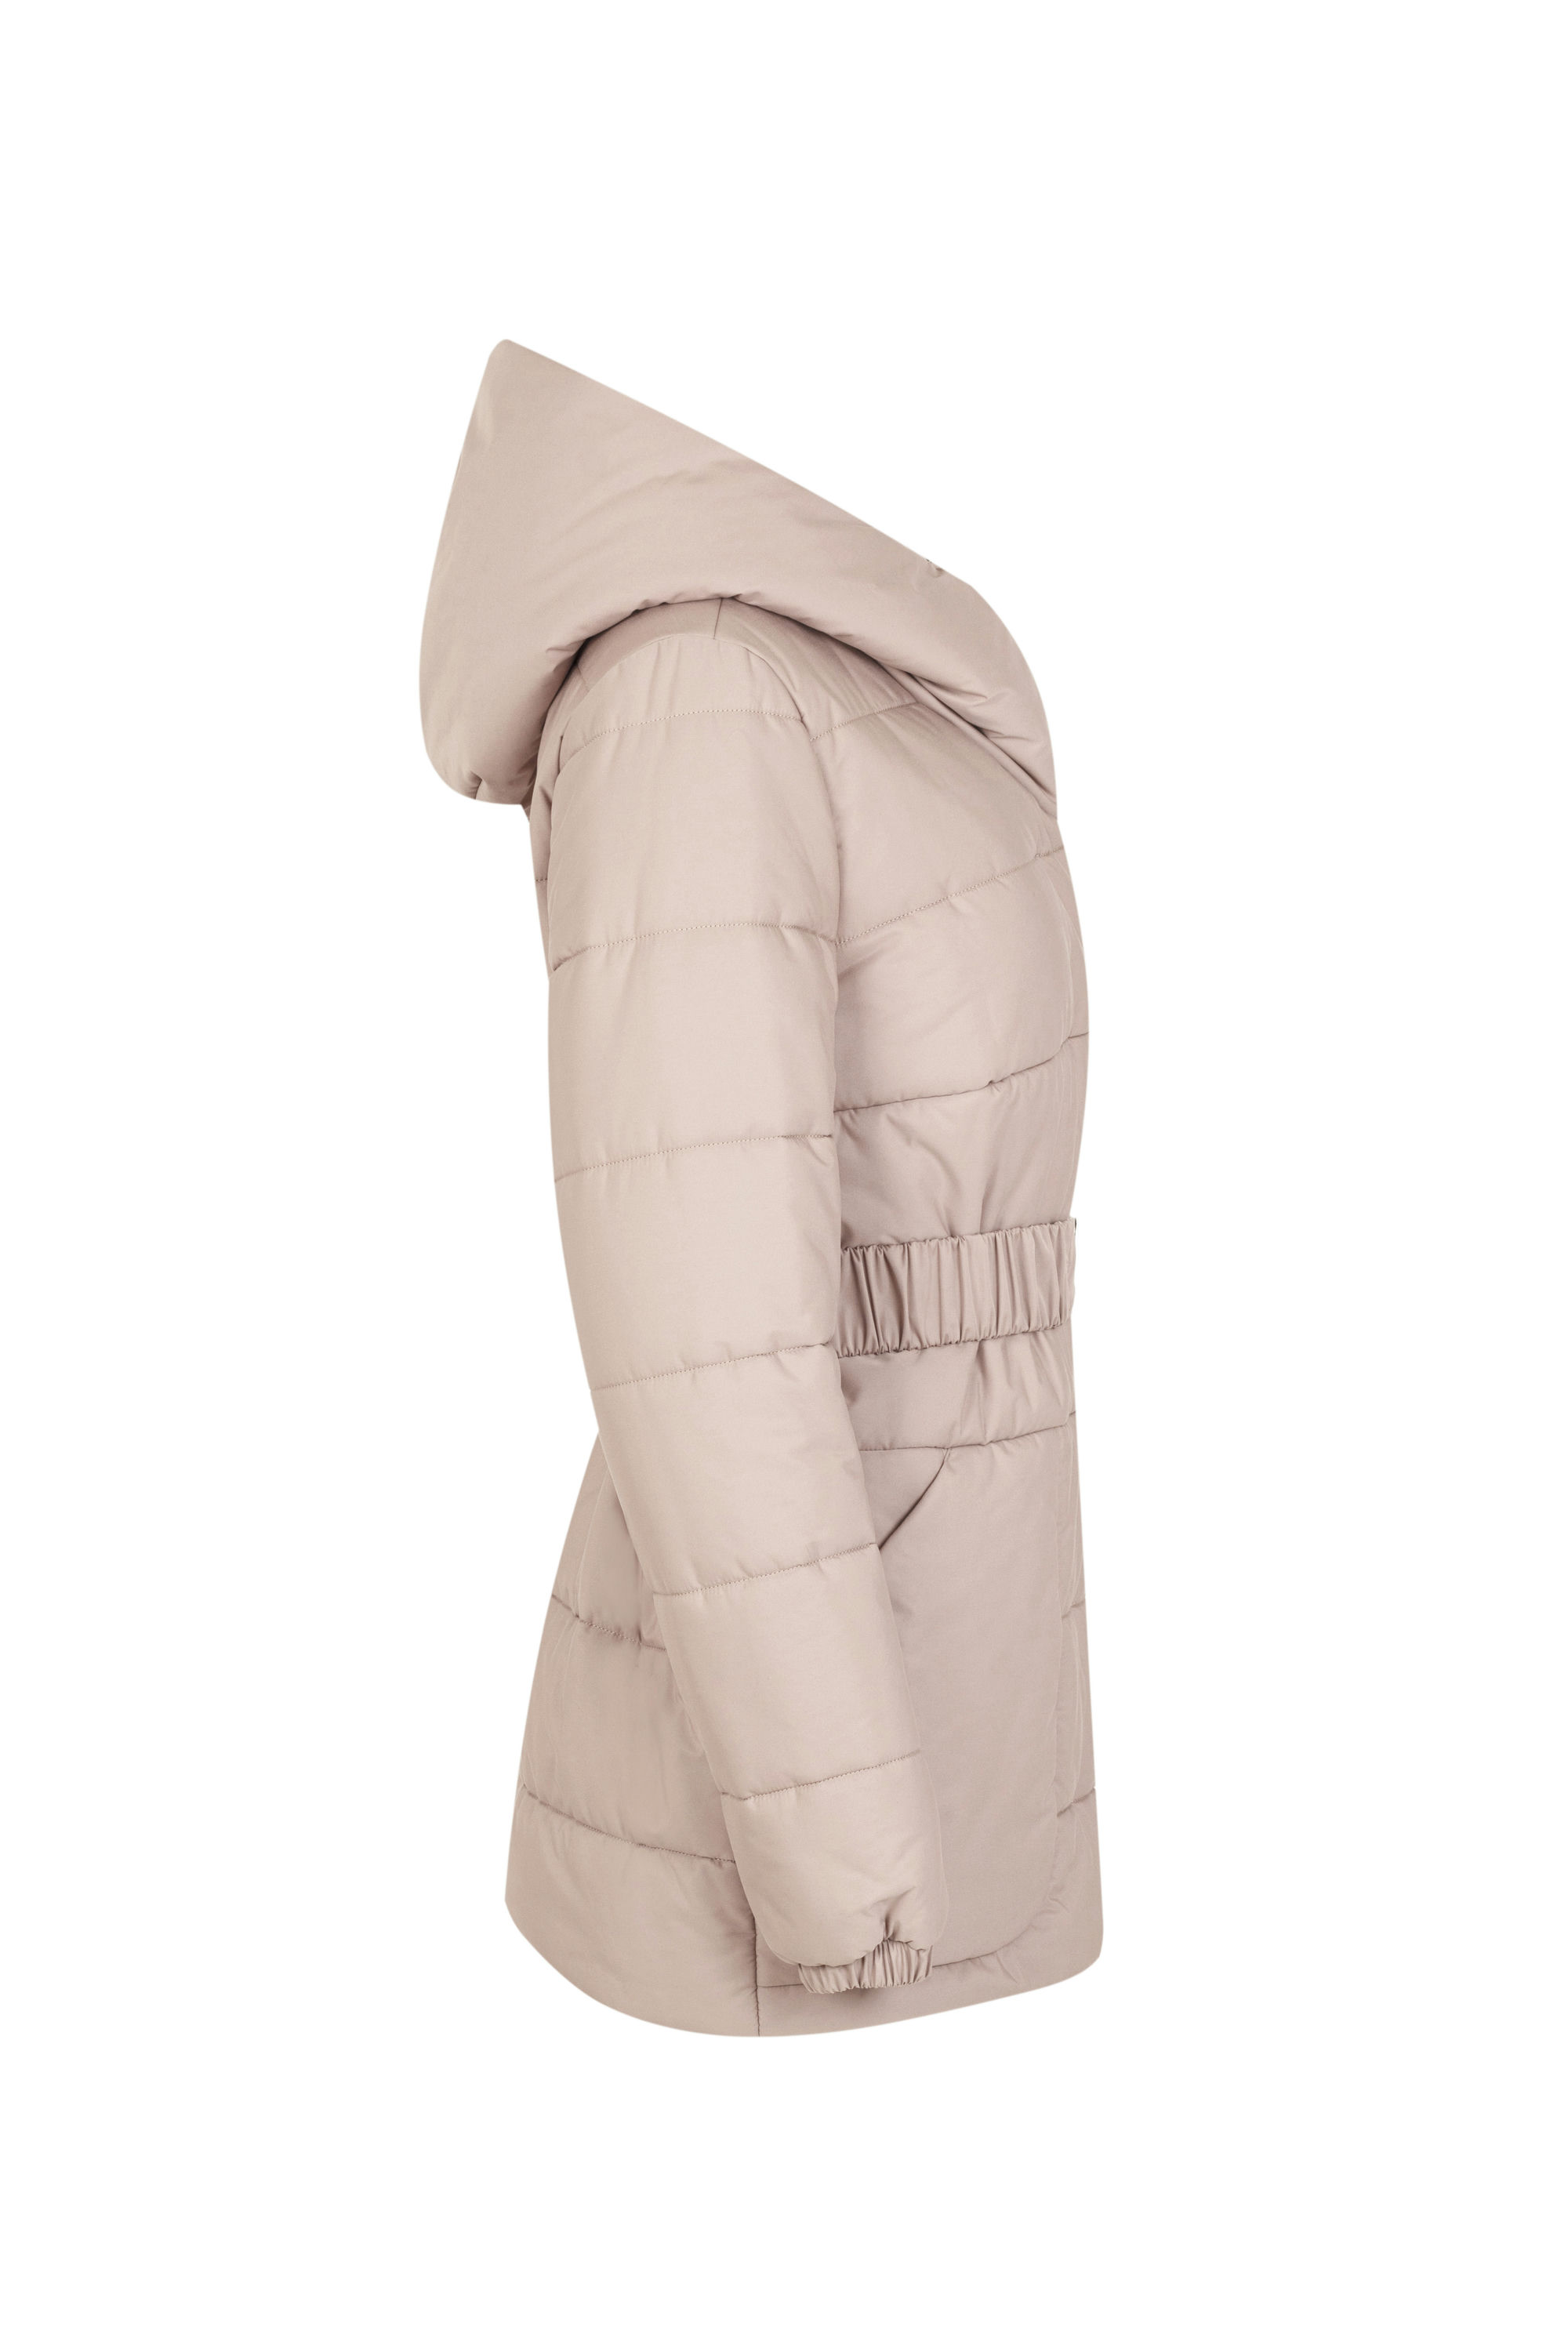 Куртка женская плащевая утепленная 4-12409-1. Фото 2.